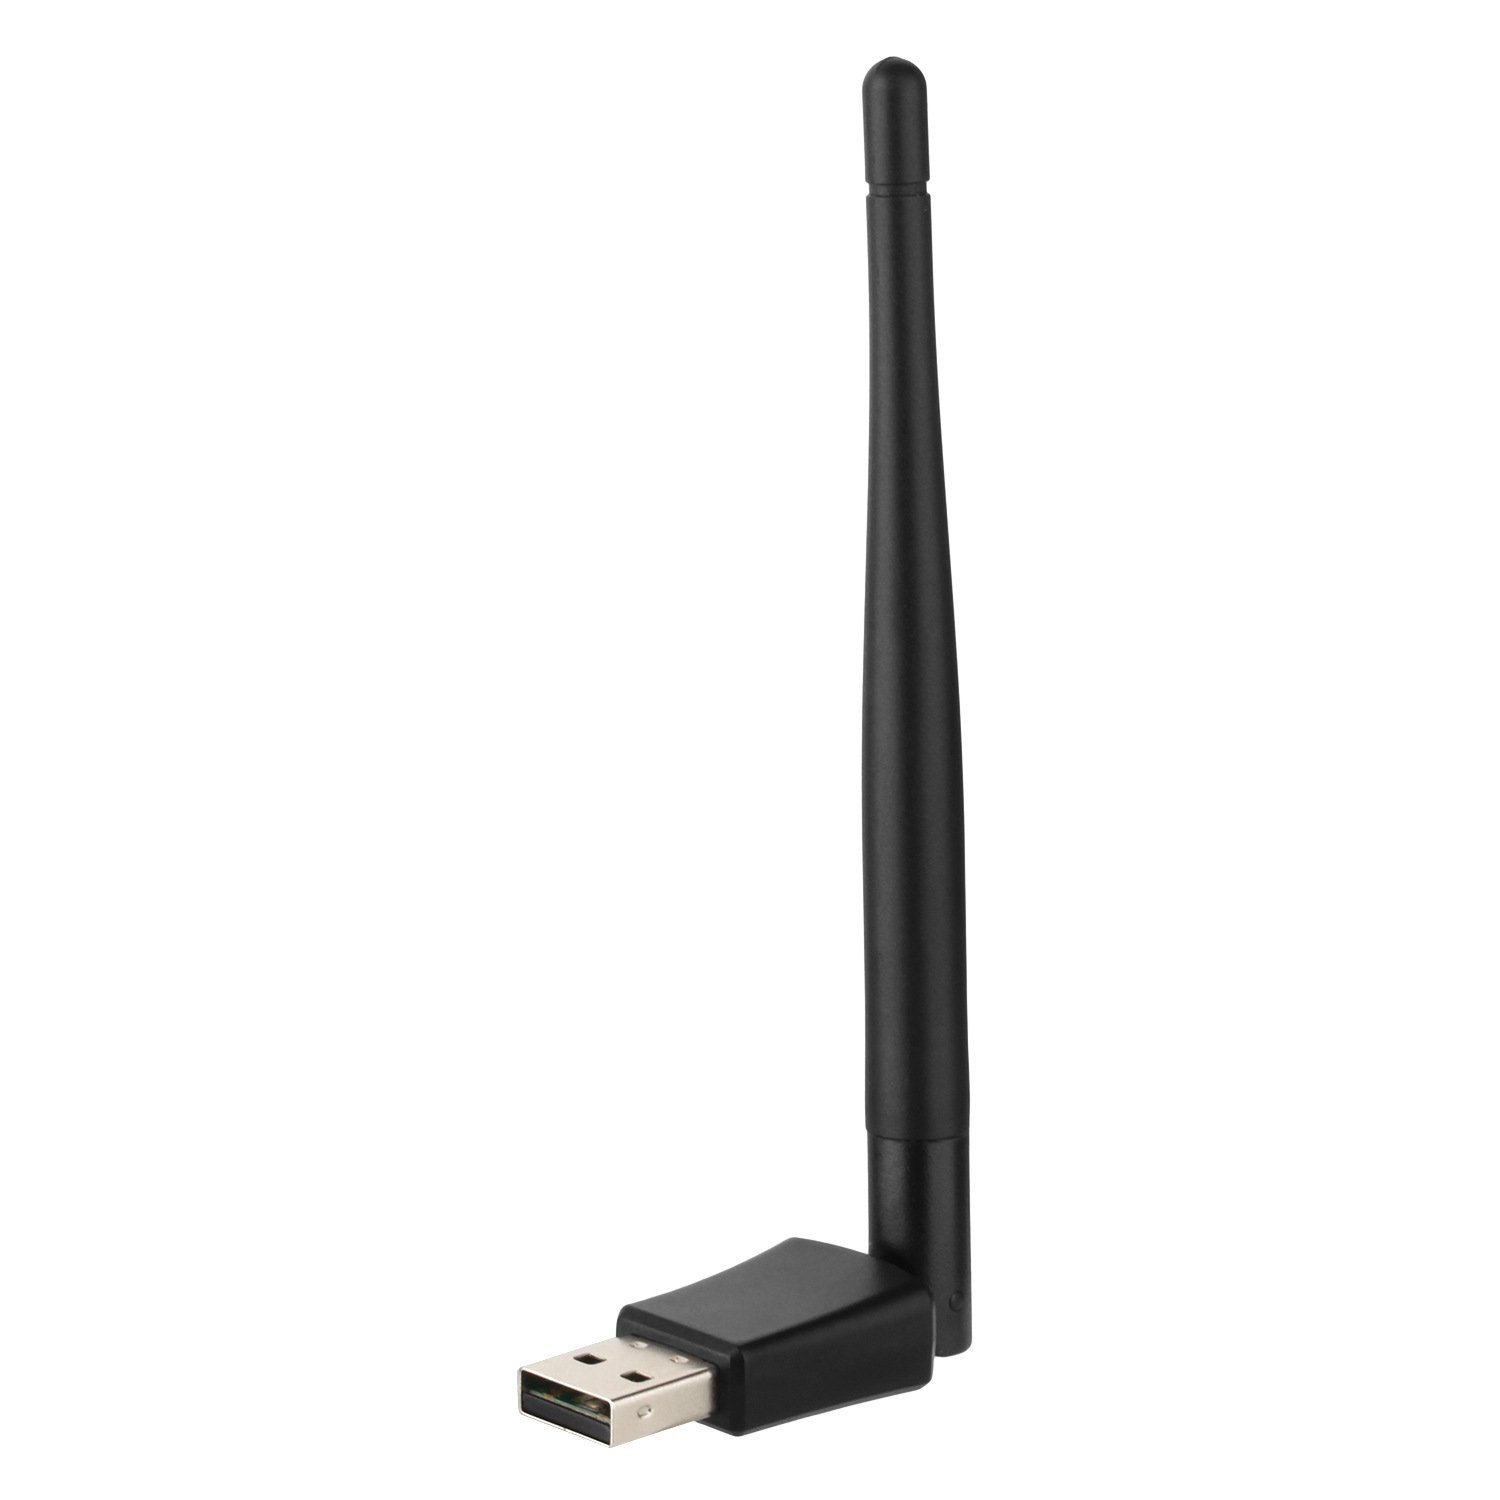 mt7610 600M信号增强型无线网卡 USB台式机无线网卡 wifi接收器